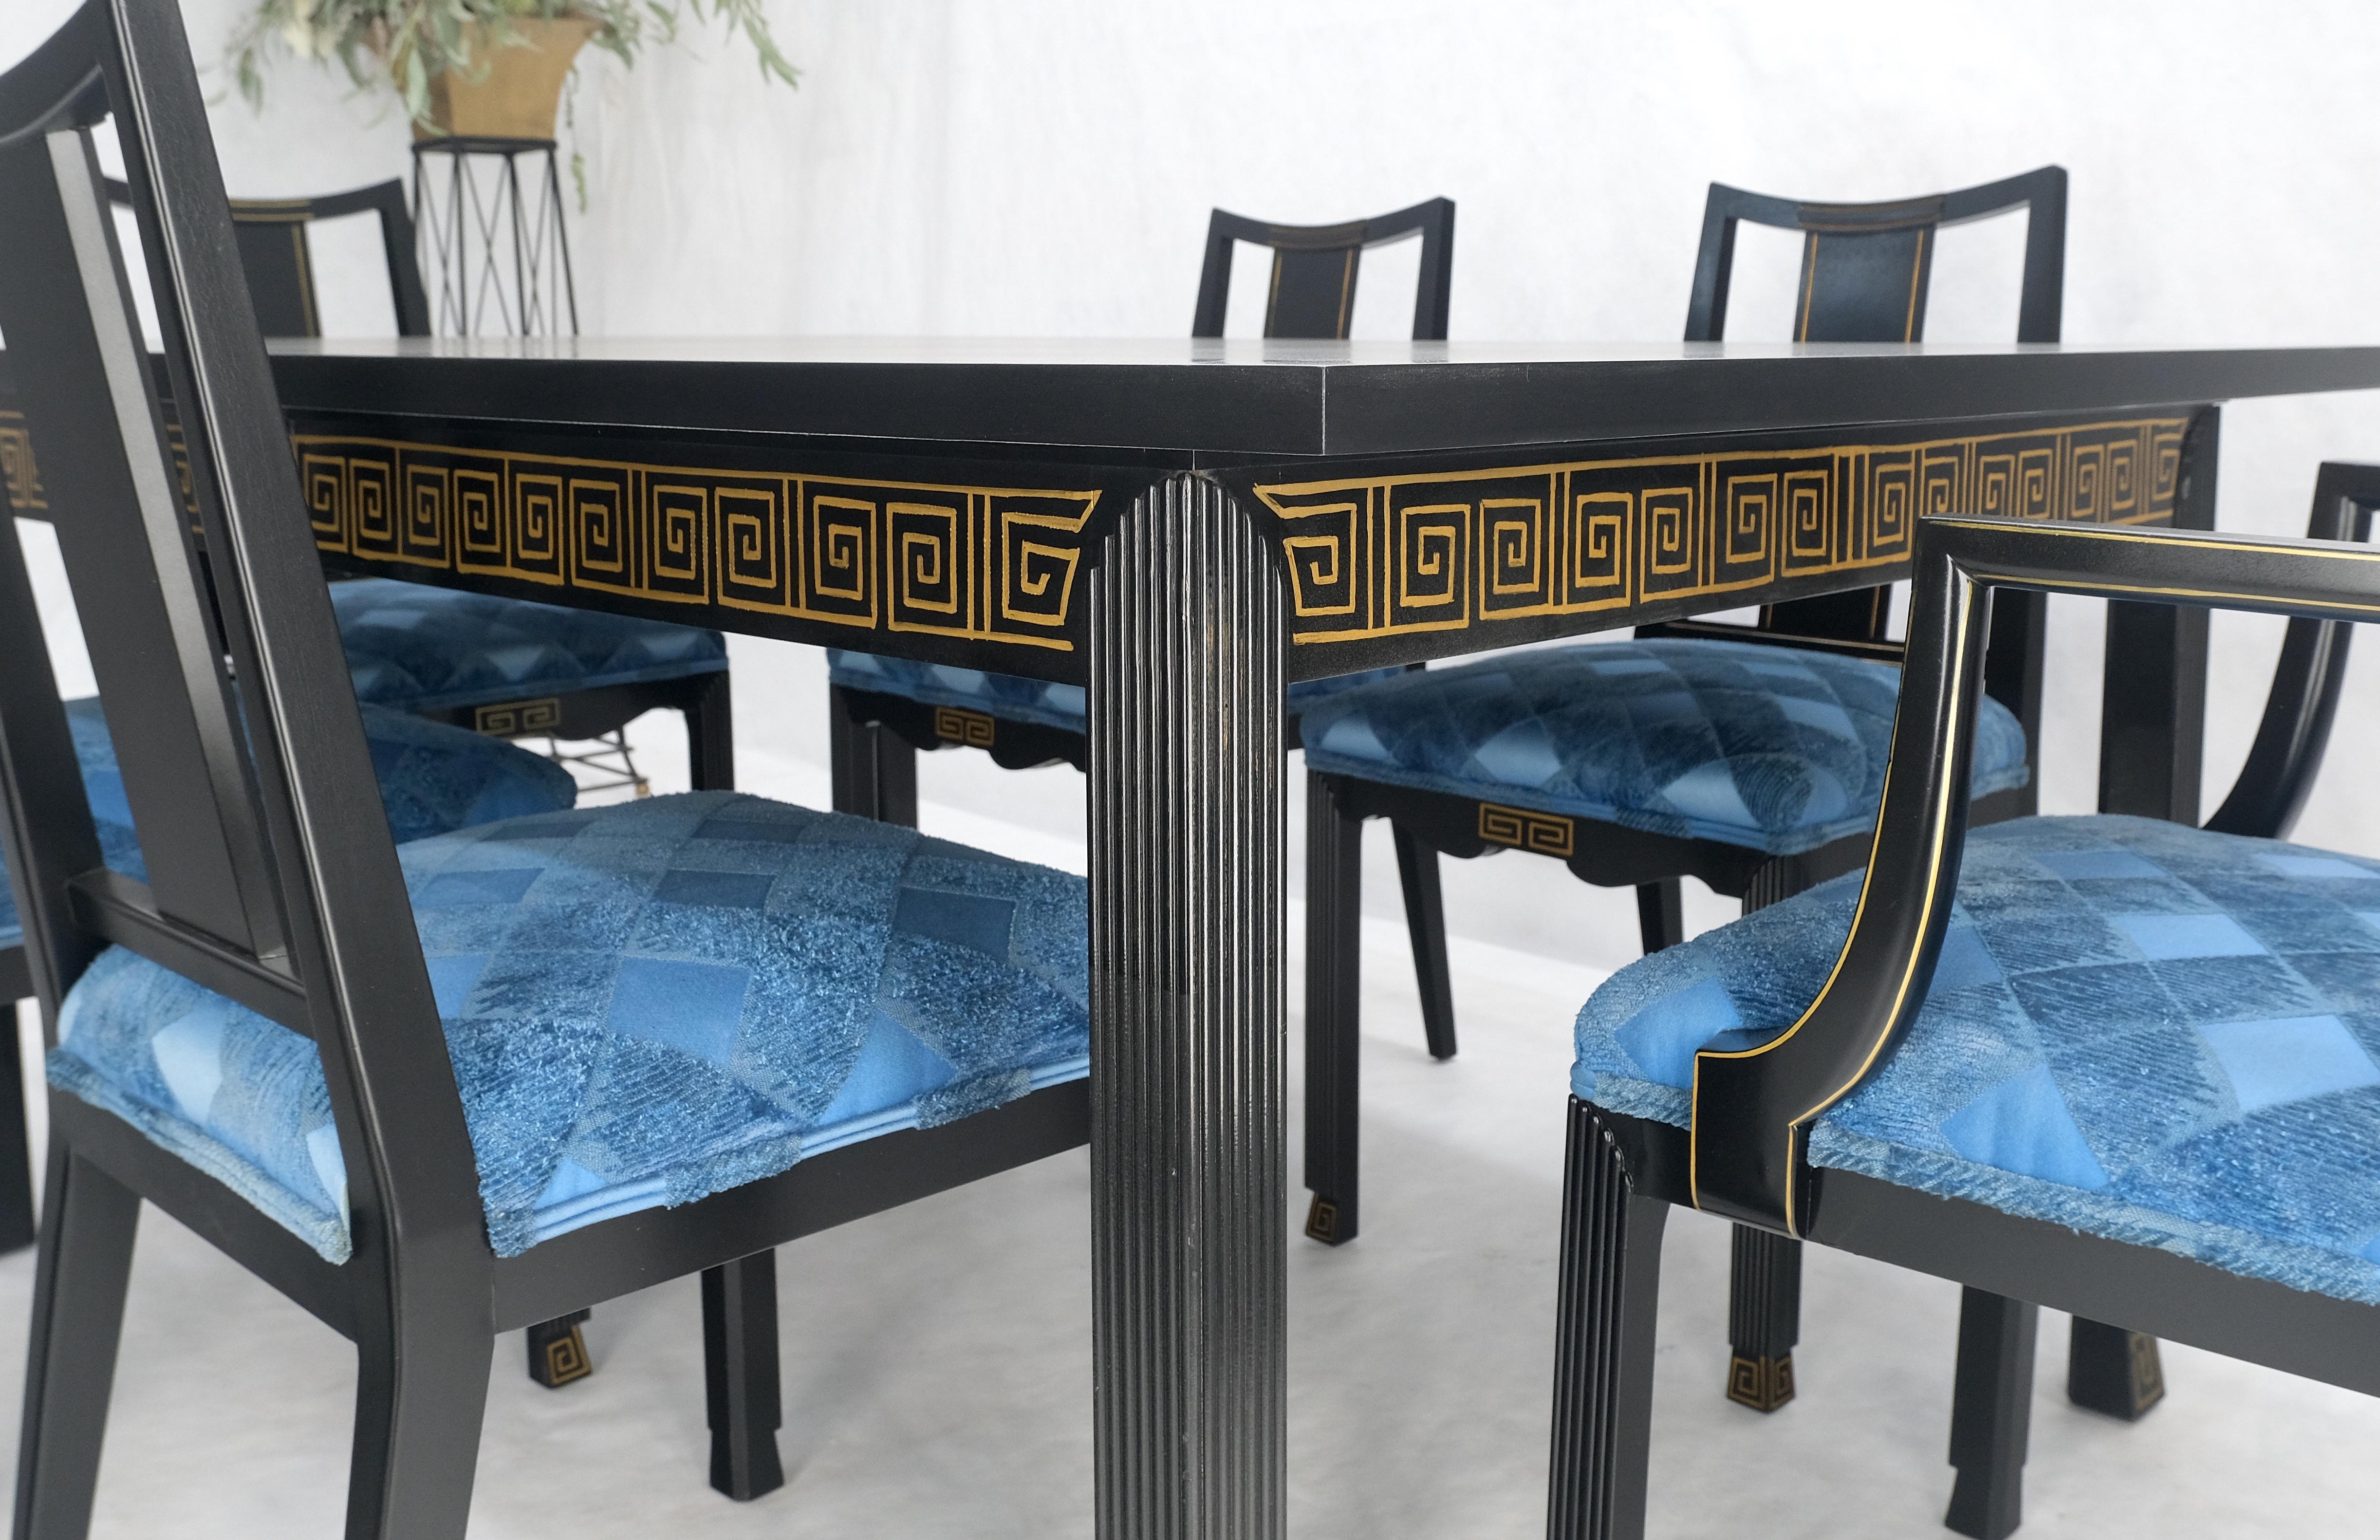 Al Huller Schwarzer Lack Gold Ornament Dekoriert 6 Stühle 2 Blätter Blaue Polsterung 2 Armstühle Esstisch Set MINT!
Die Stühle sind sehr solide und fühlen sich an wie aus einem Stück Holz, mit einem angenehmen Gewicht, kompakt und komfortabel im